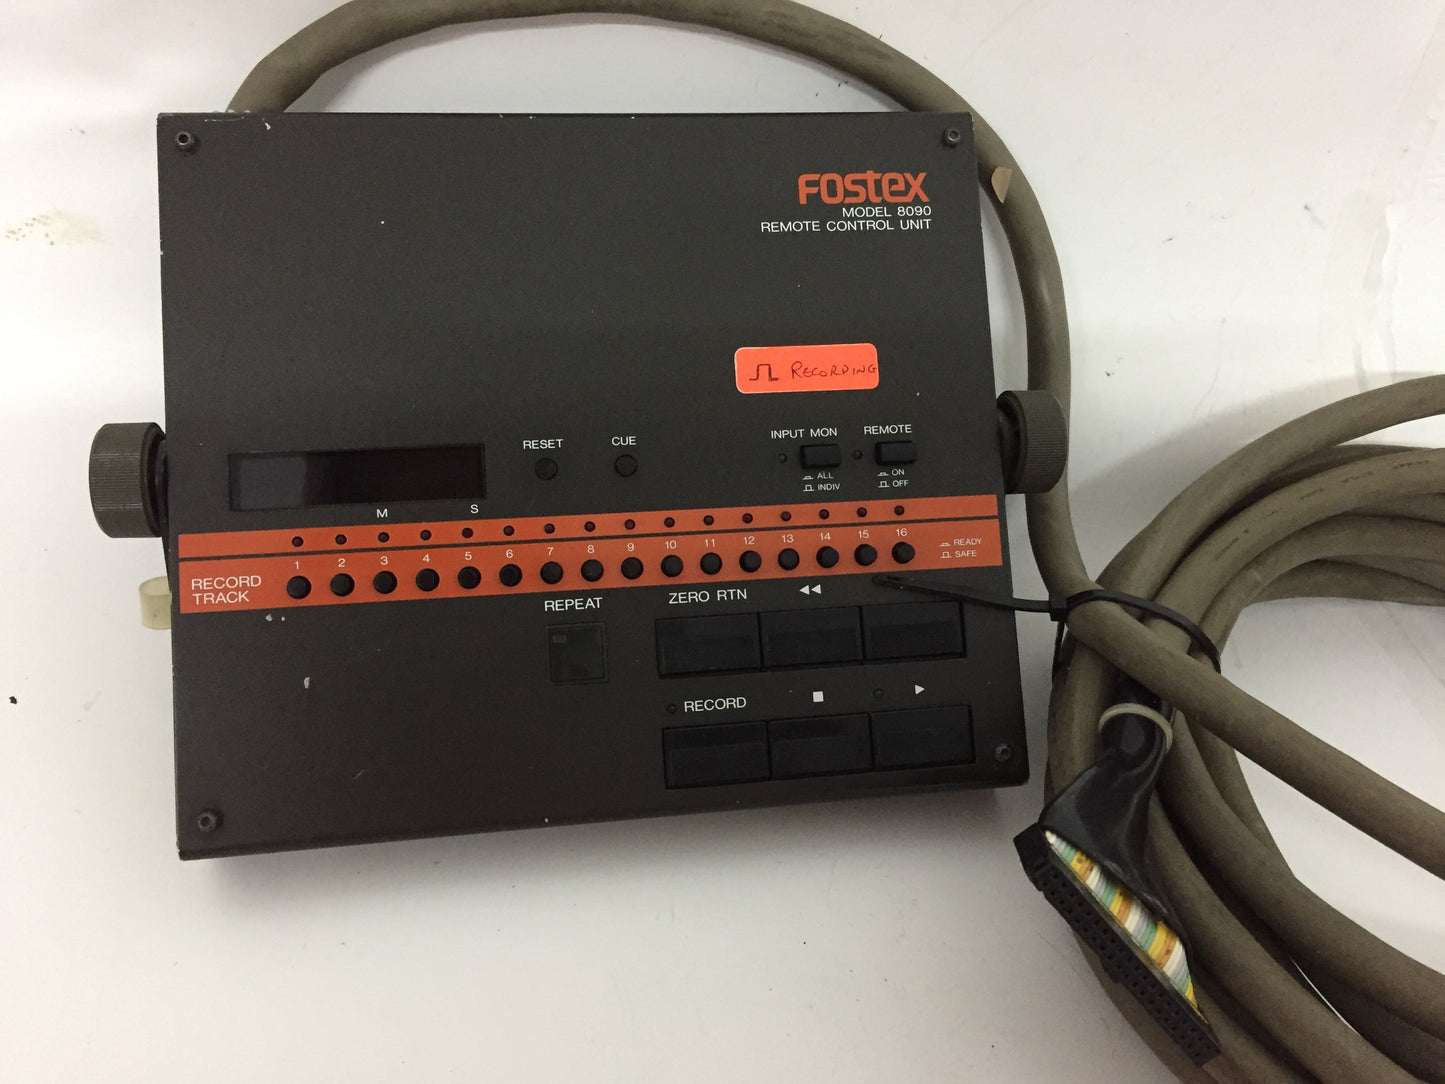 Fostex Model 8090 remote control unit